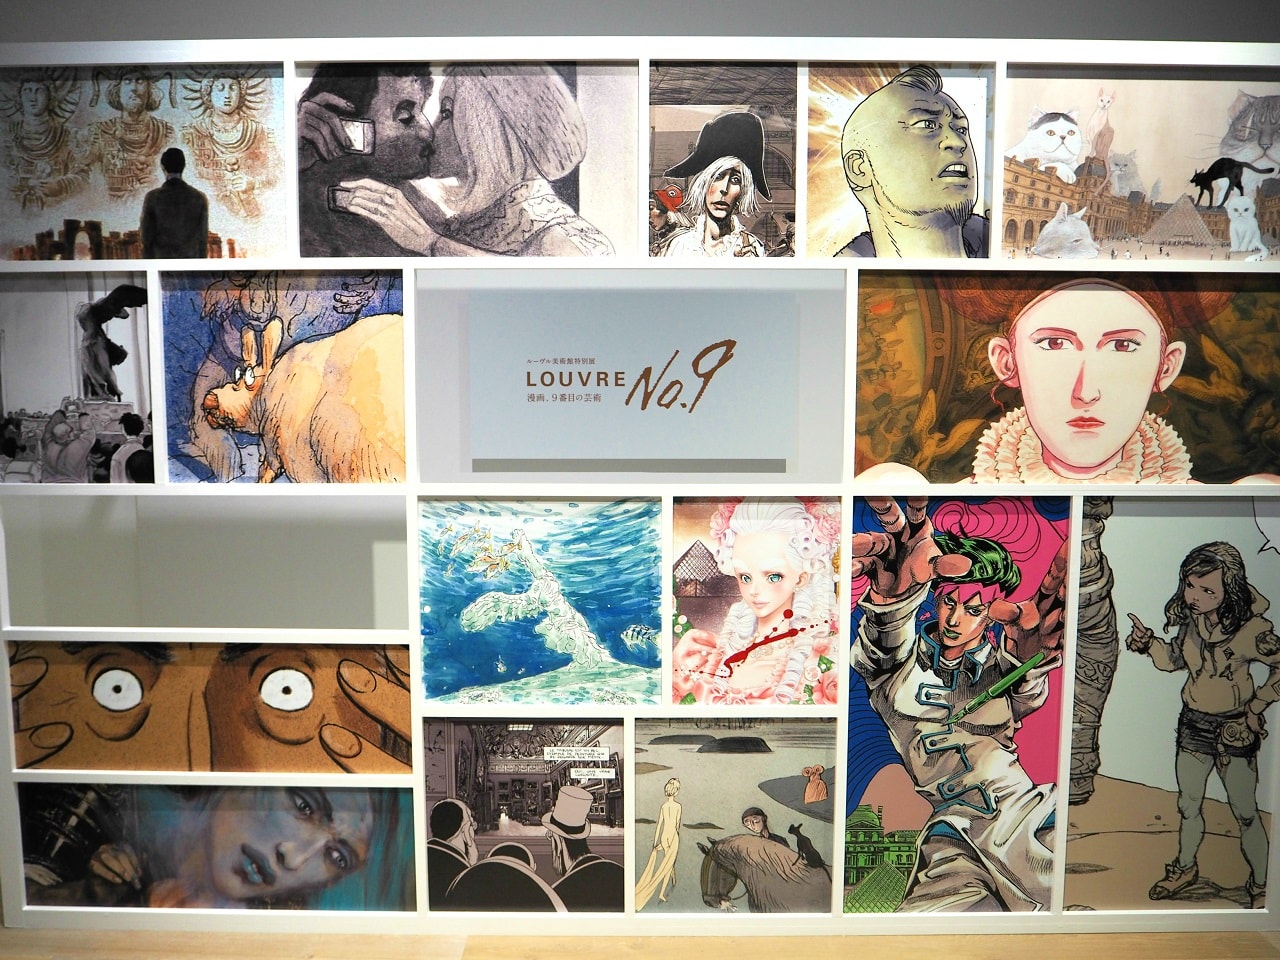 ルーヴルNo.9が名古屋松坂屋美術館にて開催決定！ #ルーヴル9